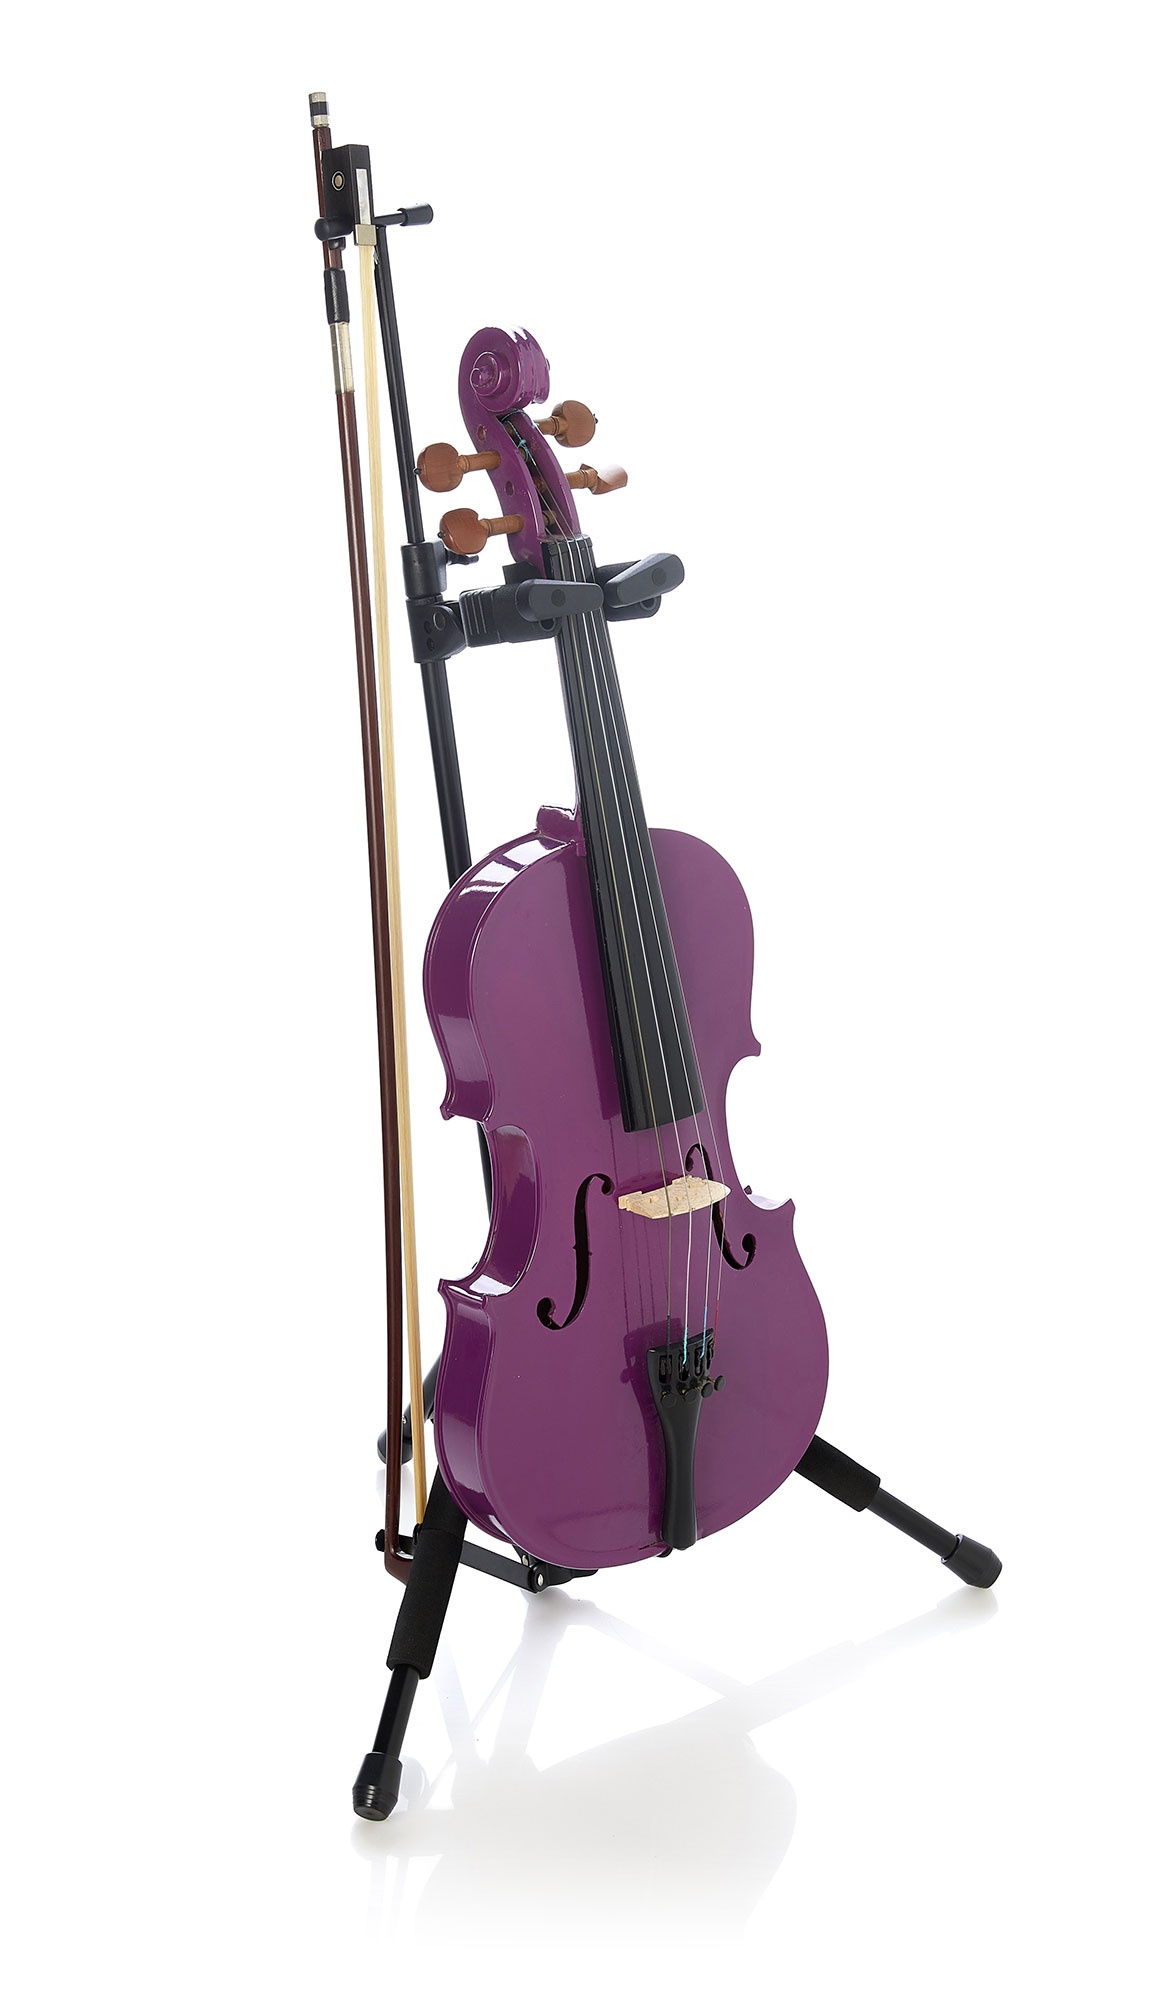 sh600-supporto-violino-sistema-auto-bloccaggio-rivestito-eva-porta-archetto